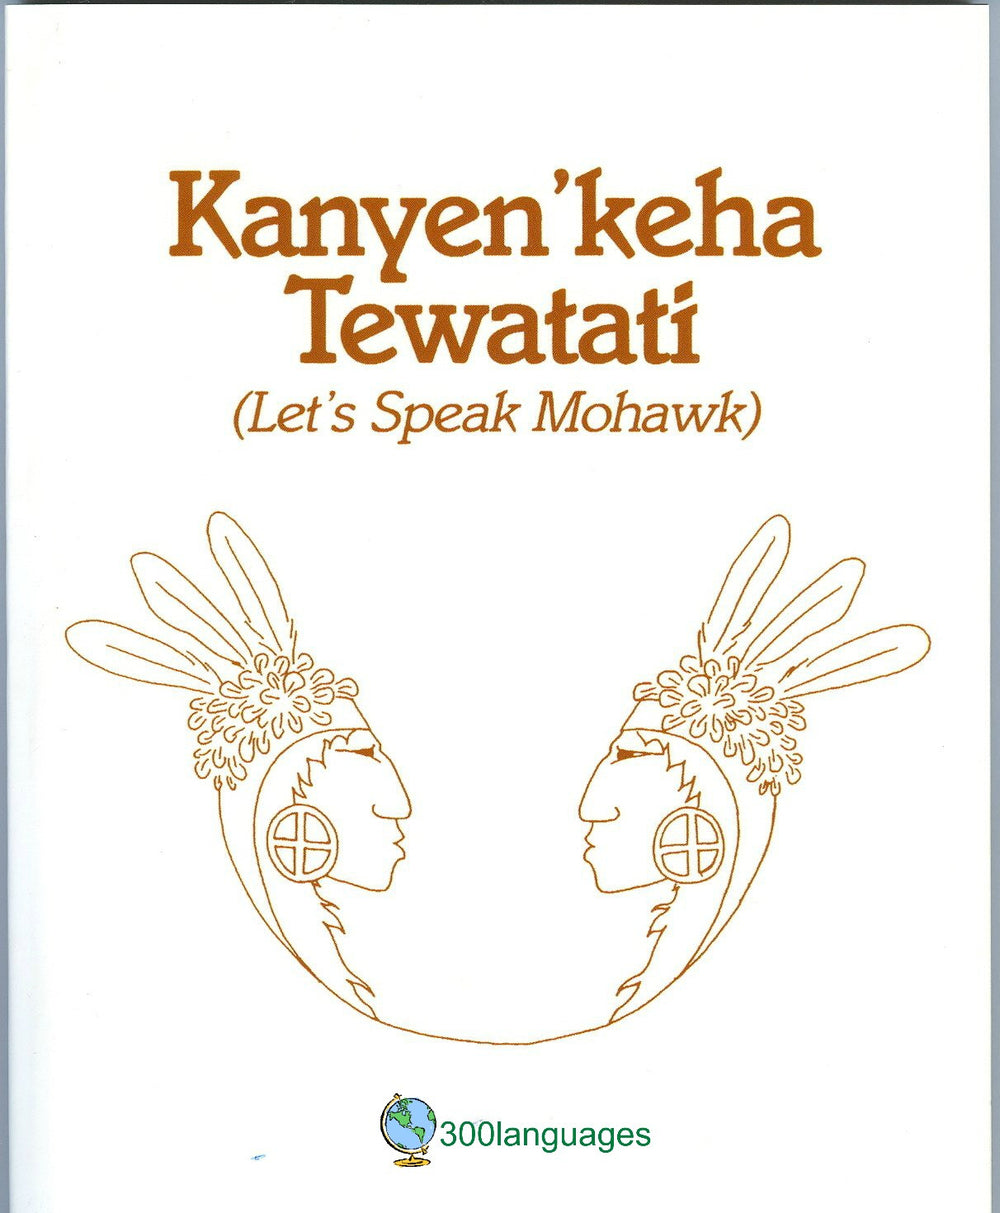 Let's Speak Mohawk